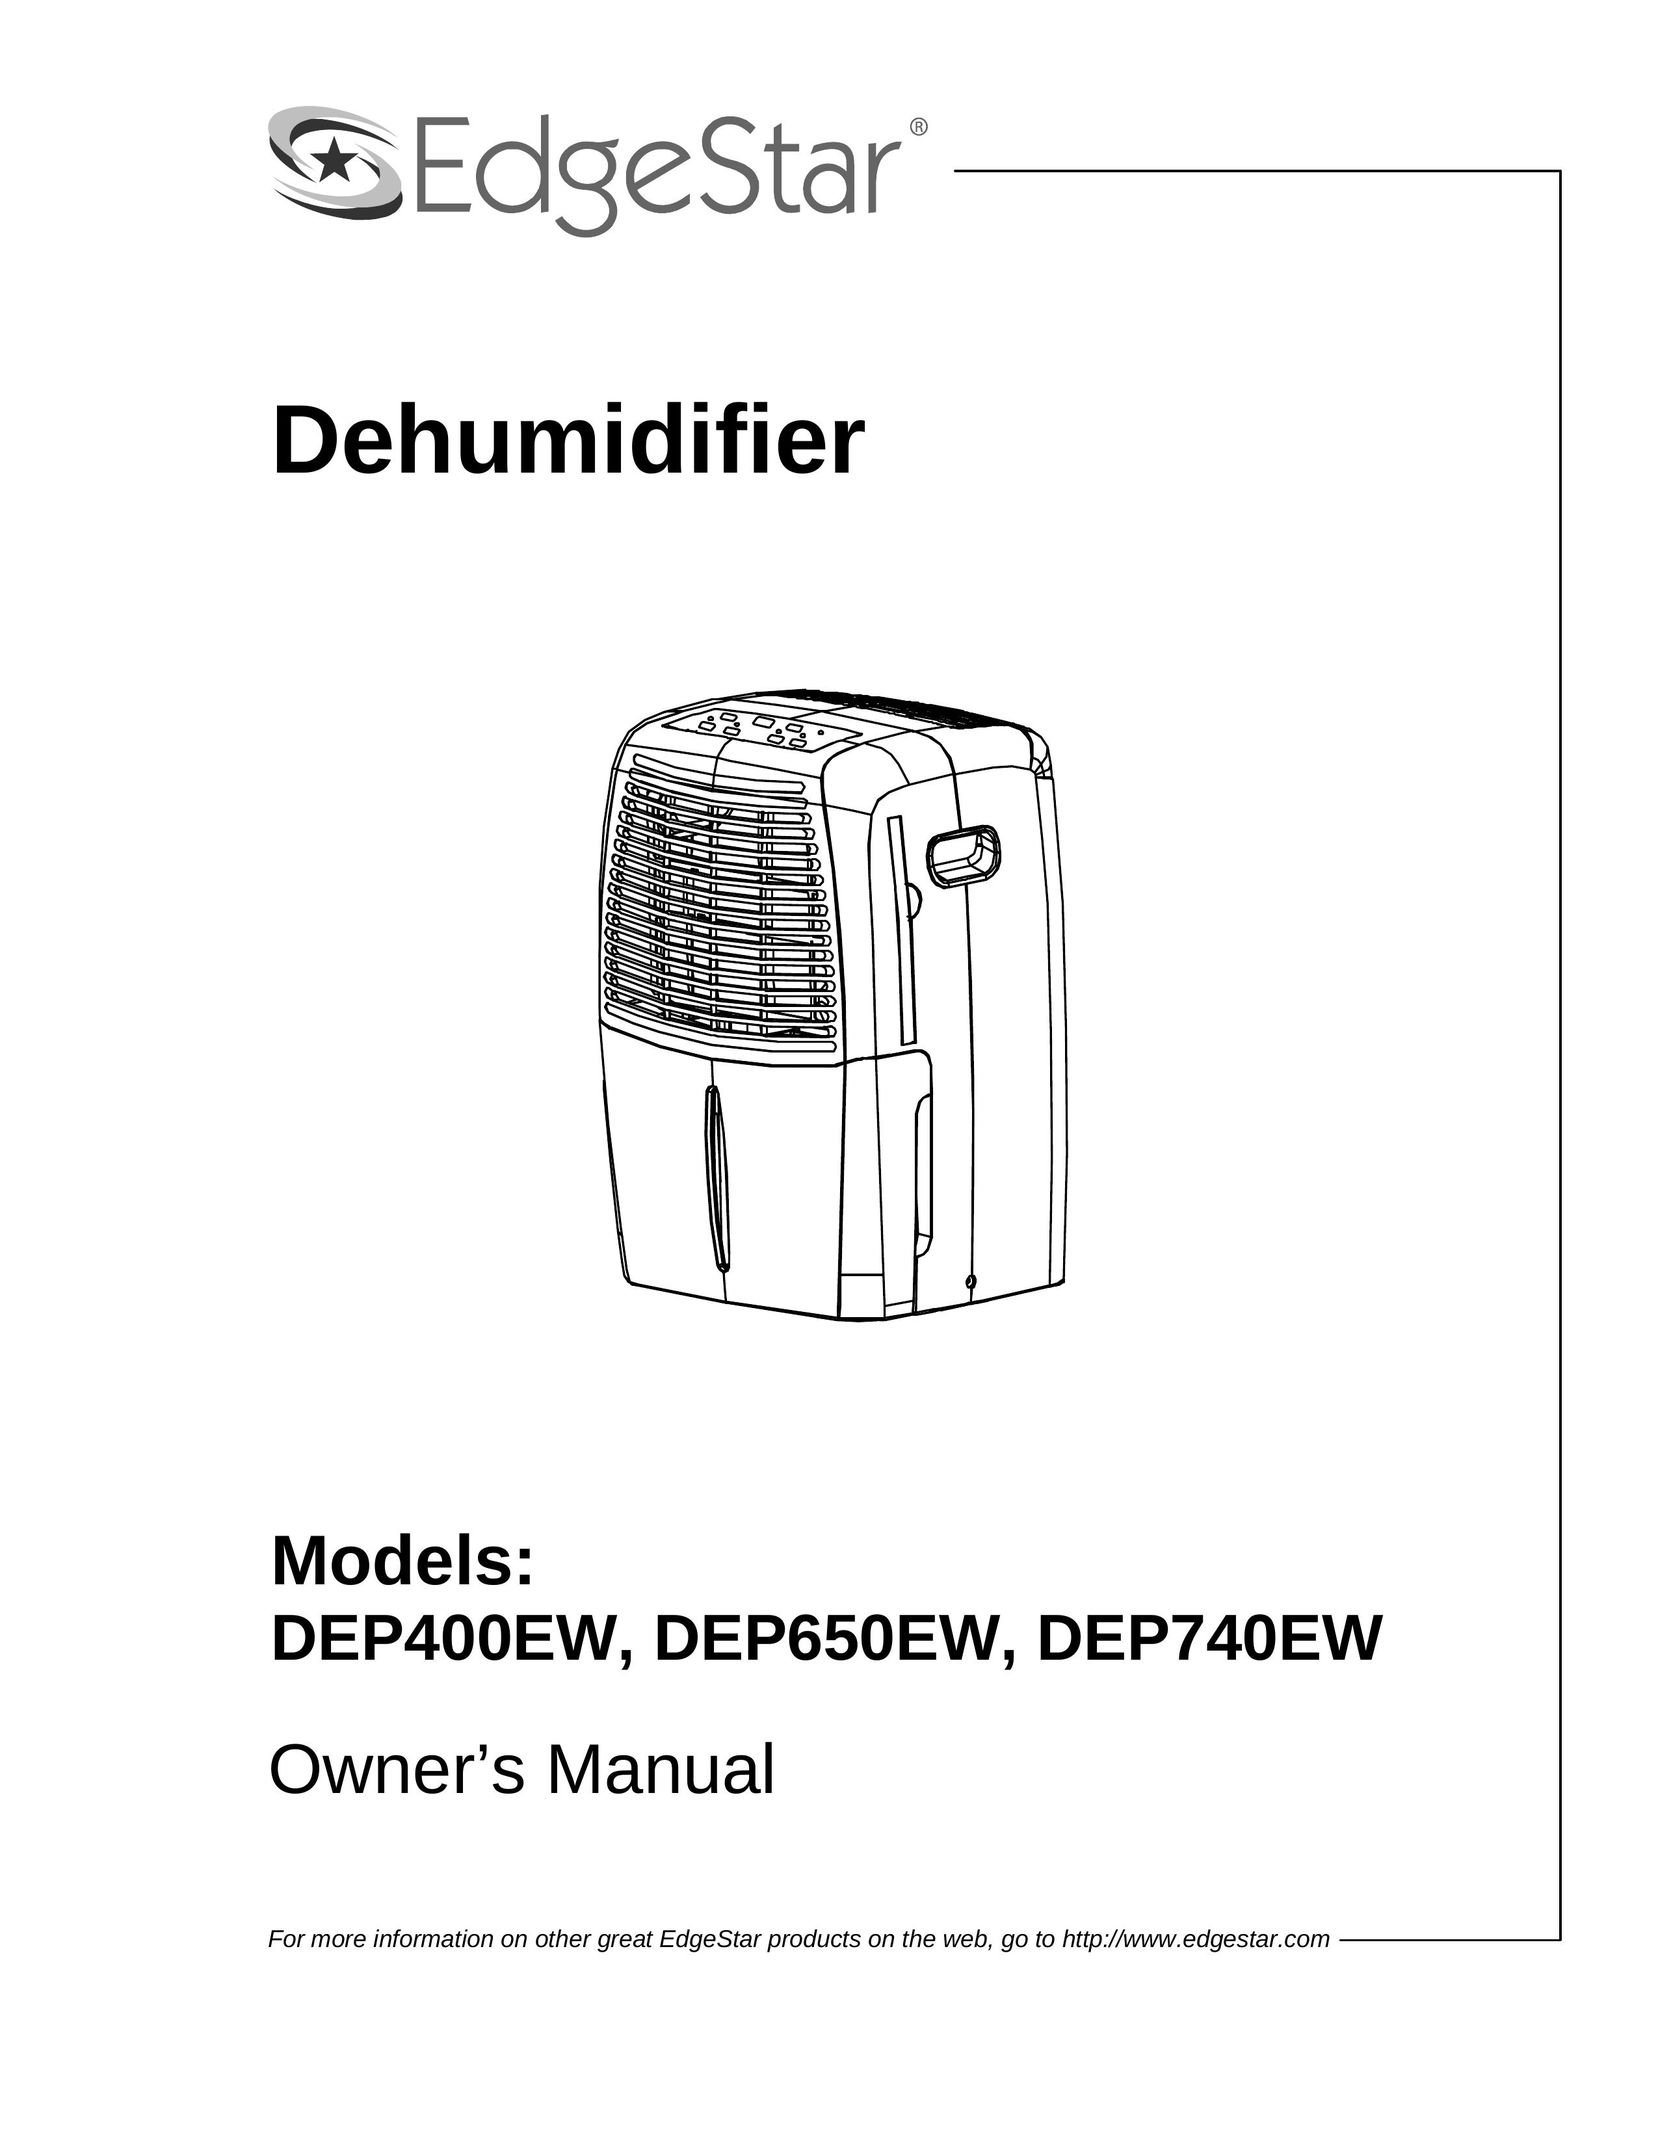 EdgeStar DEP400EW Dehumidifier User Manual